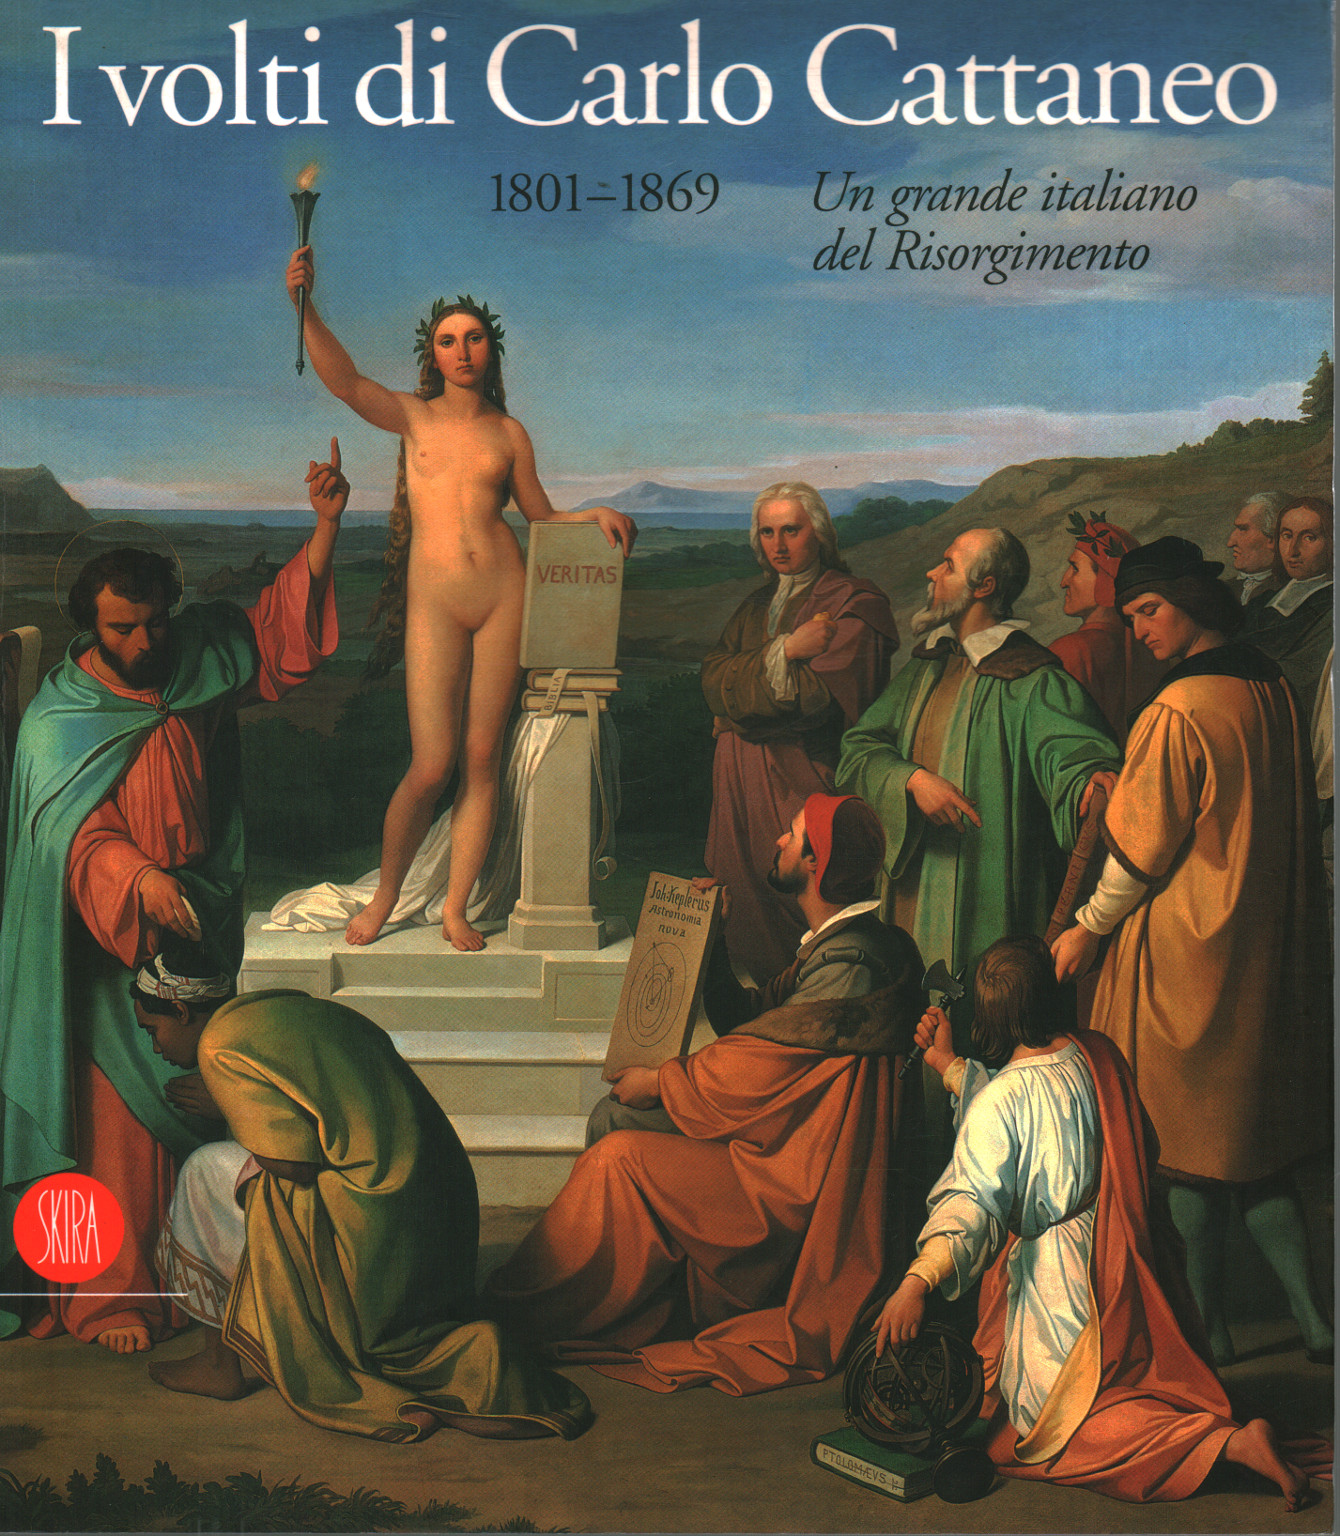 I volti di Carlo Cattaneo 1801-1869, s.a.